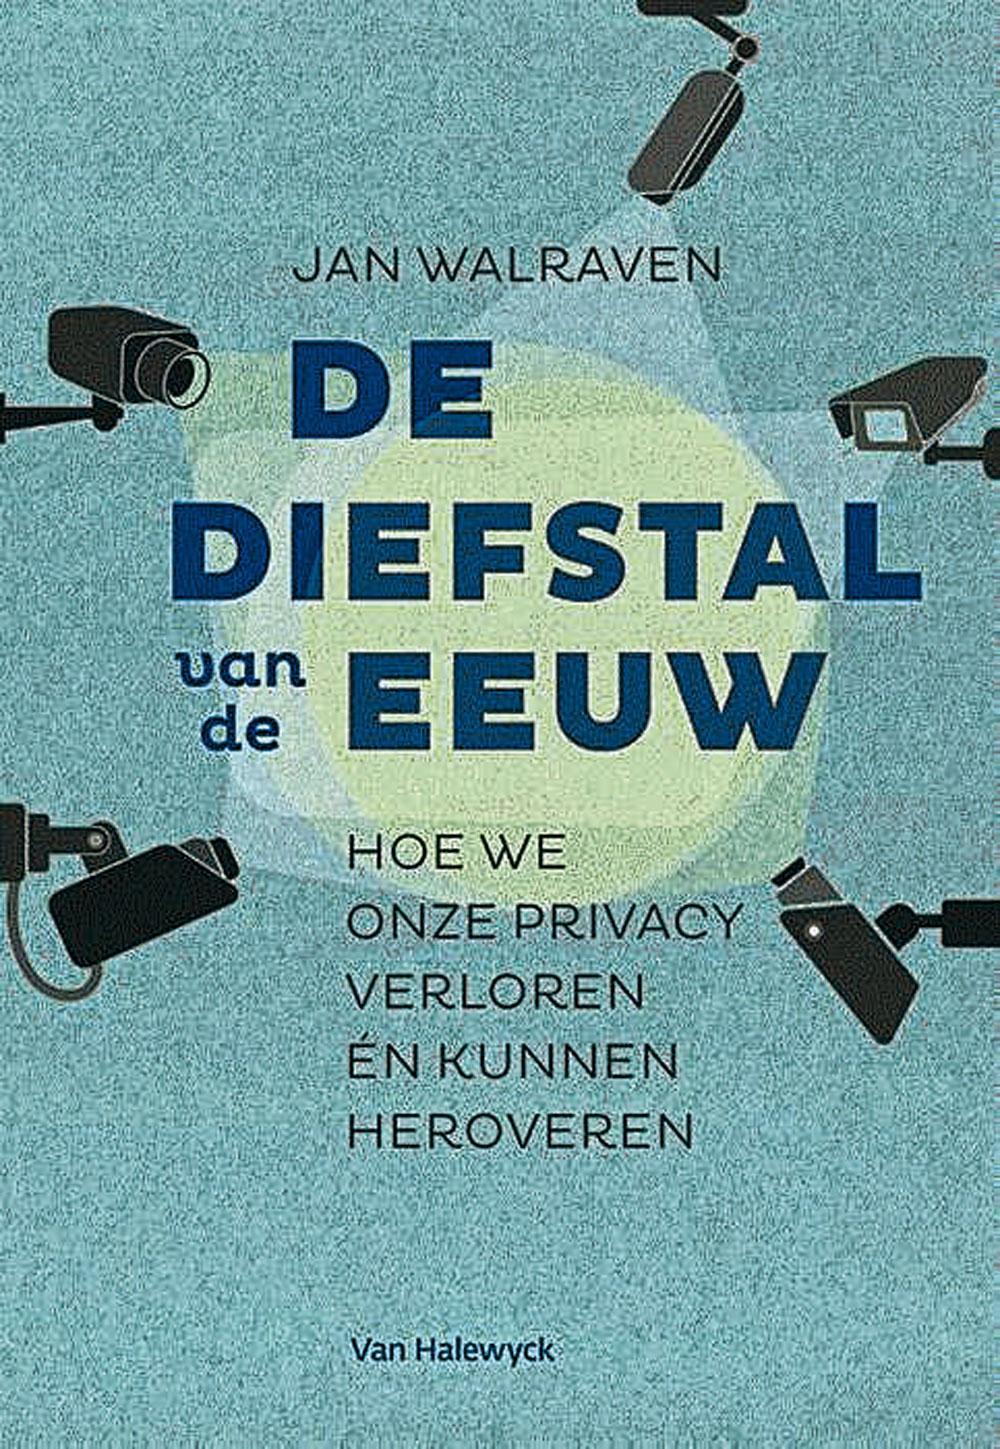 Jan Walraven, De diefstal van de eeuw - Hoe we onze privacy verloren én kunnen heroveren, Van Halewyck, 224 blz., 21,99 euro.